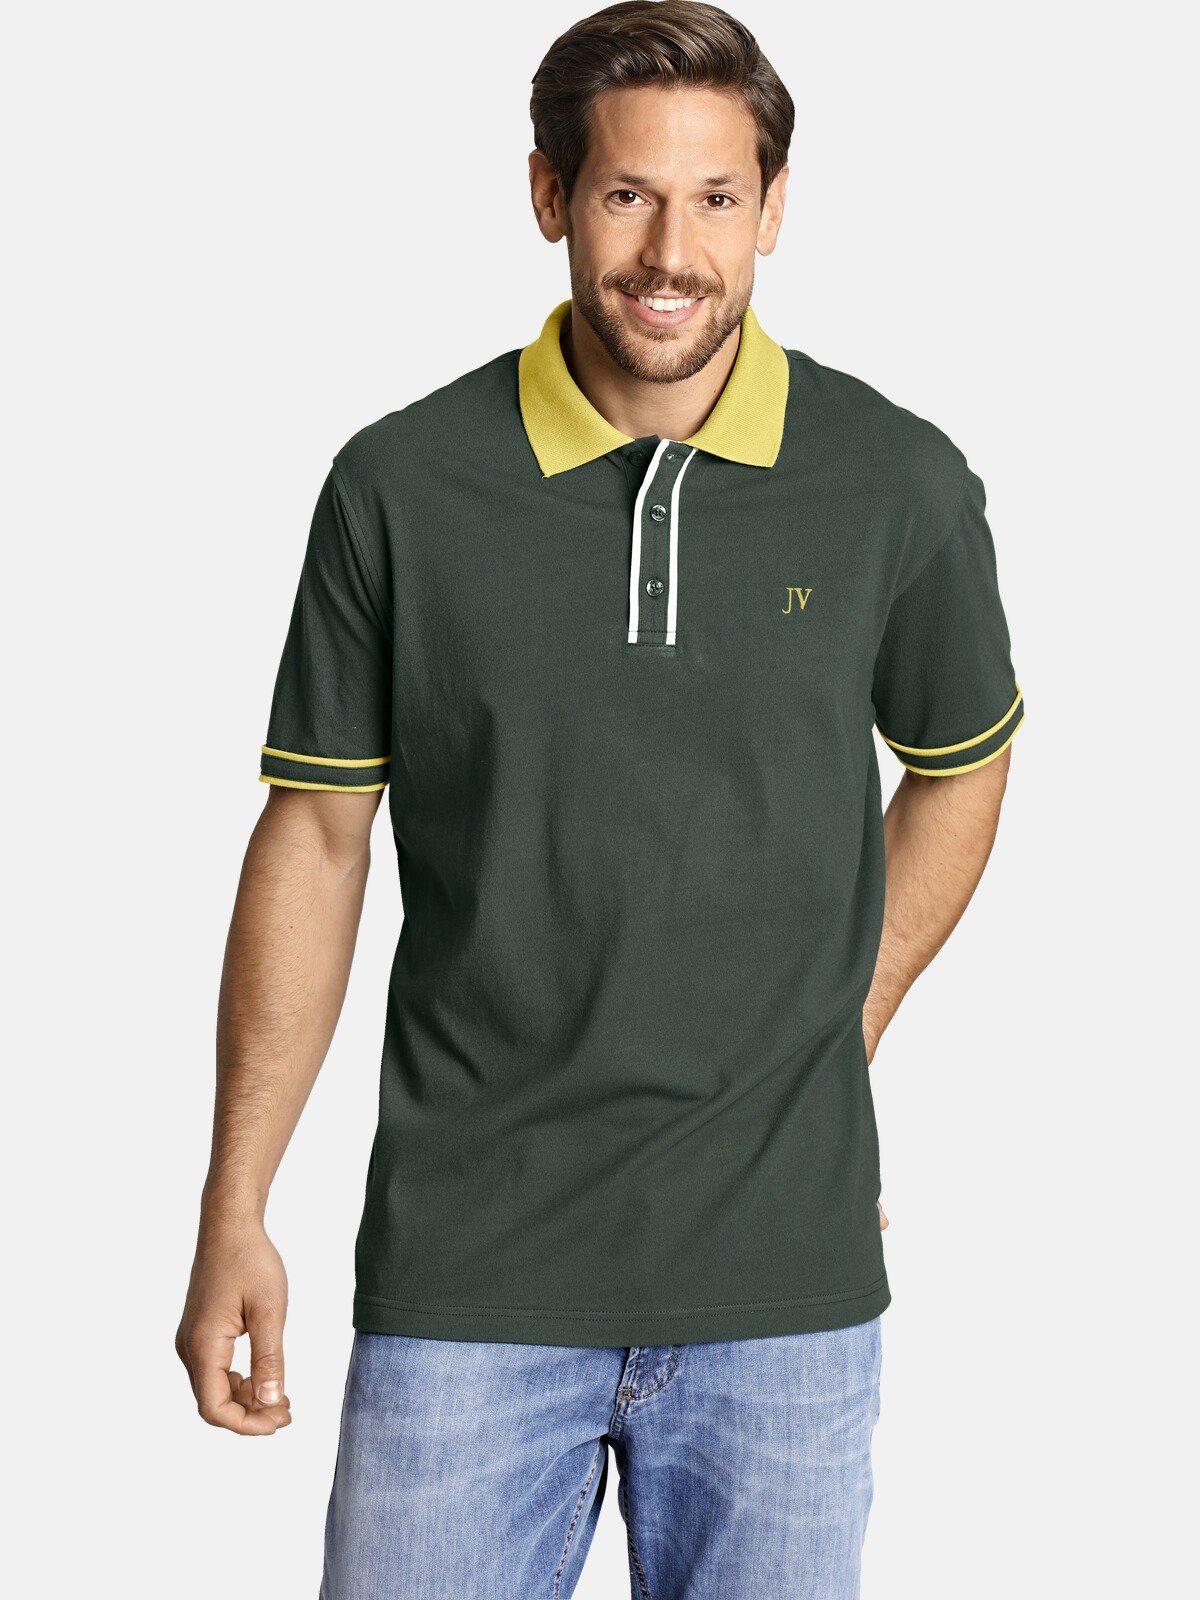 Jan Vanderstorm Poloshirt ISFRIED weiche Baumwolle, Comfort Fit grün